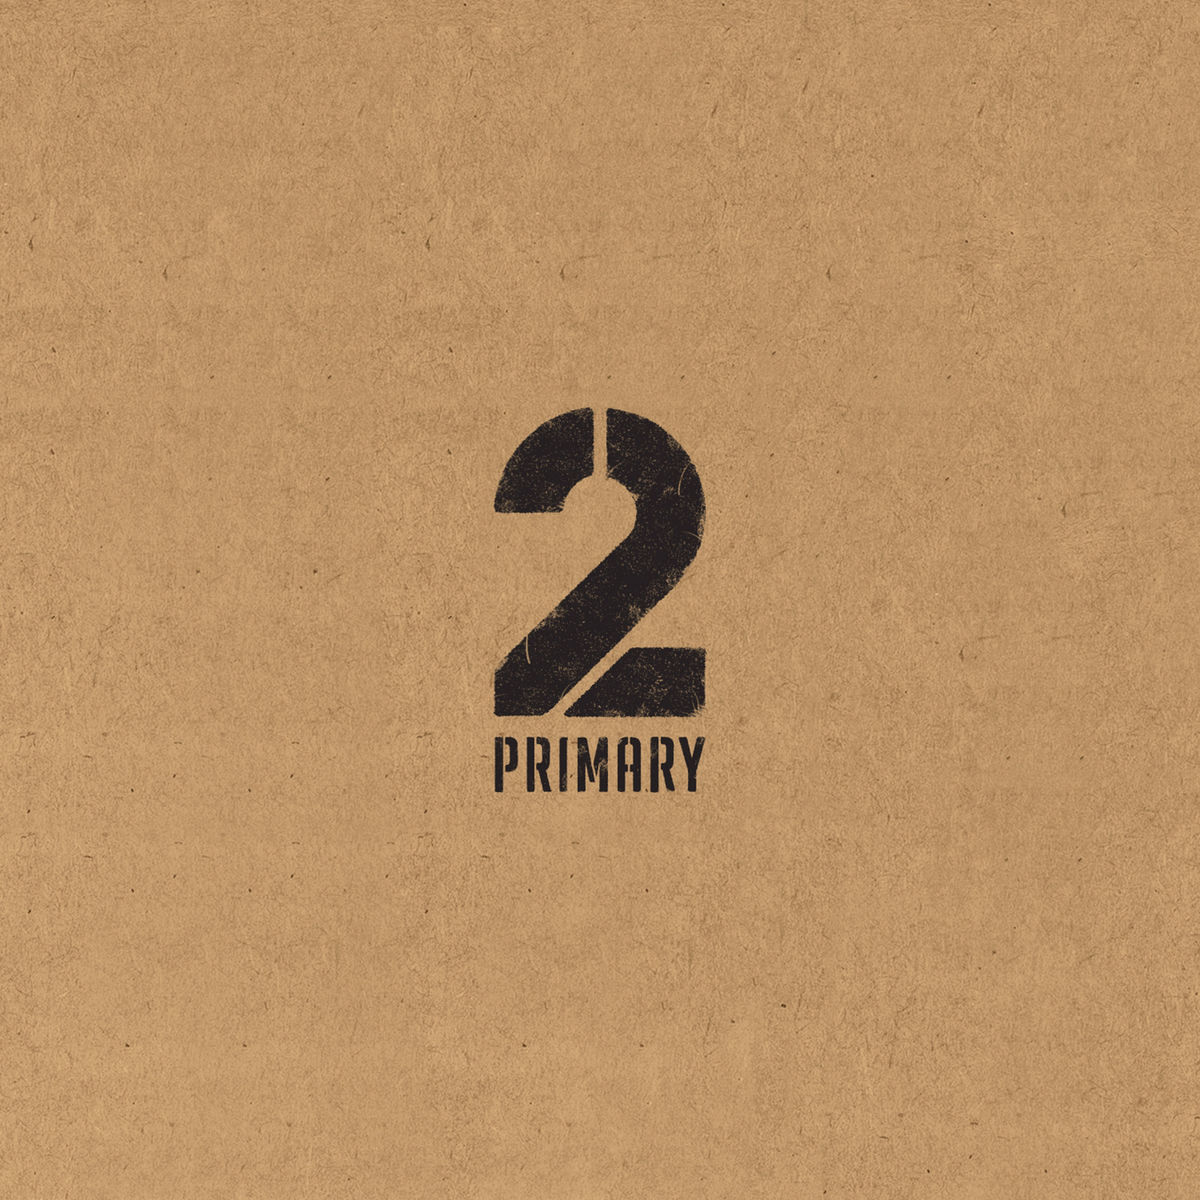 Primary – 2